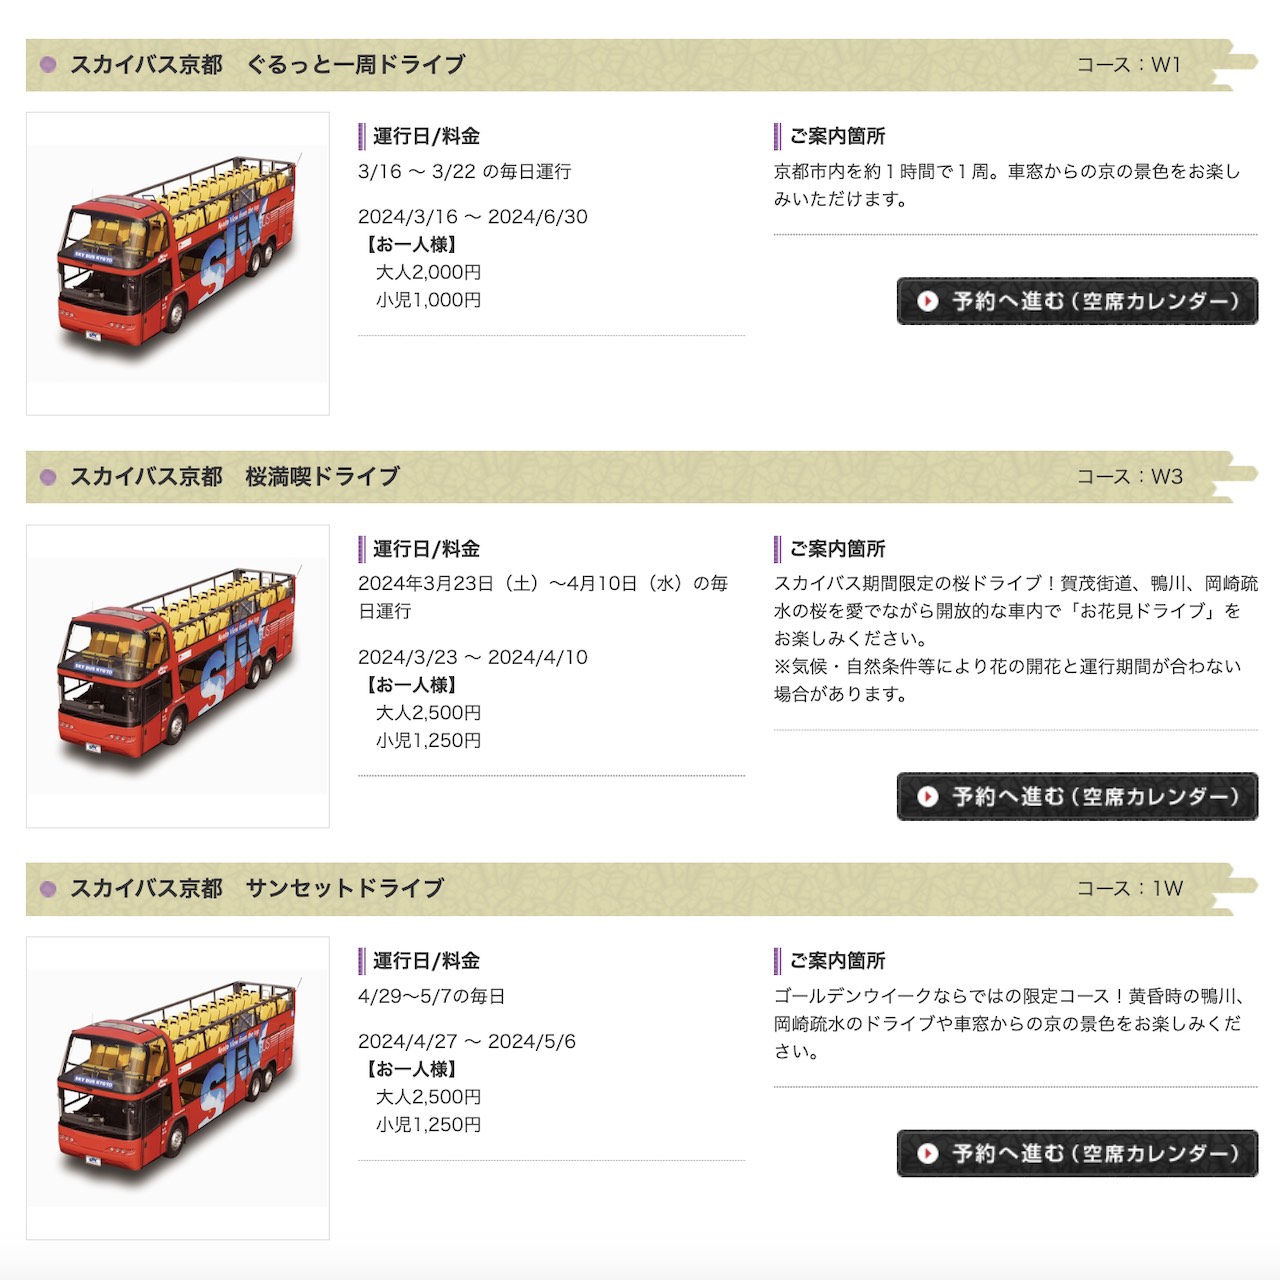 京都桜の名所 スカイバス